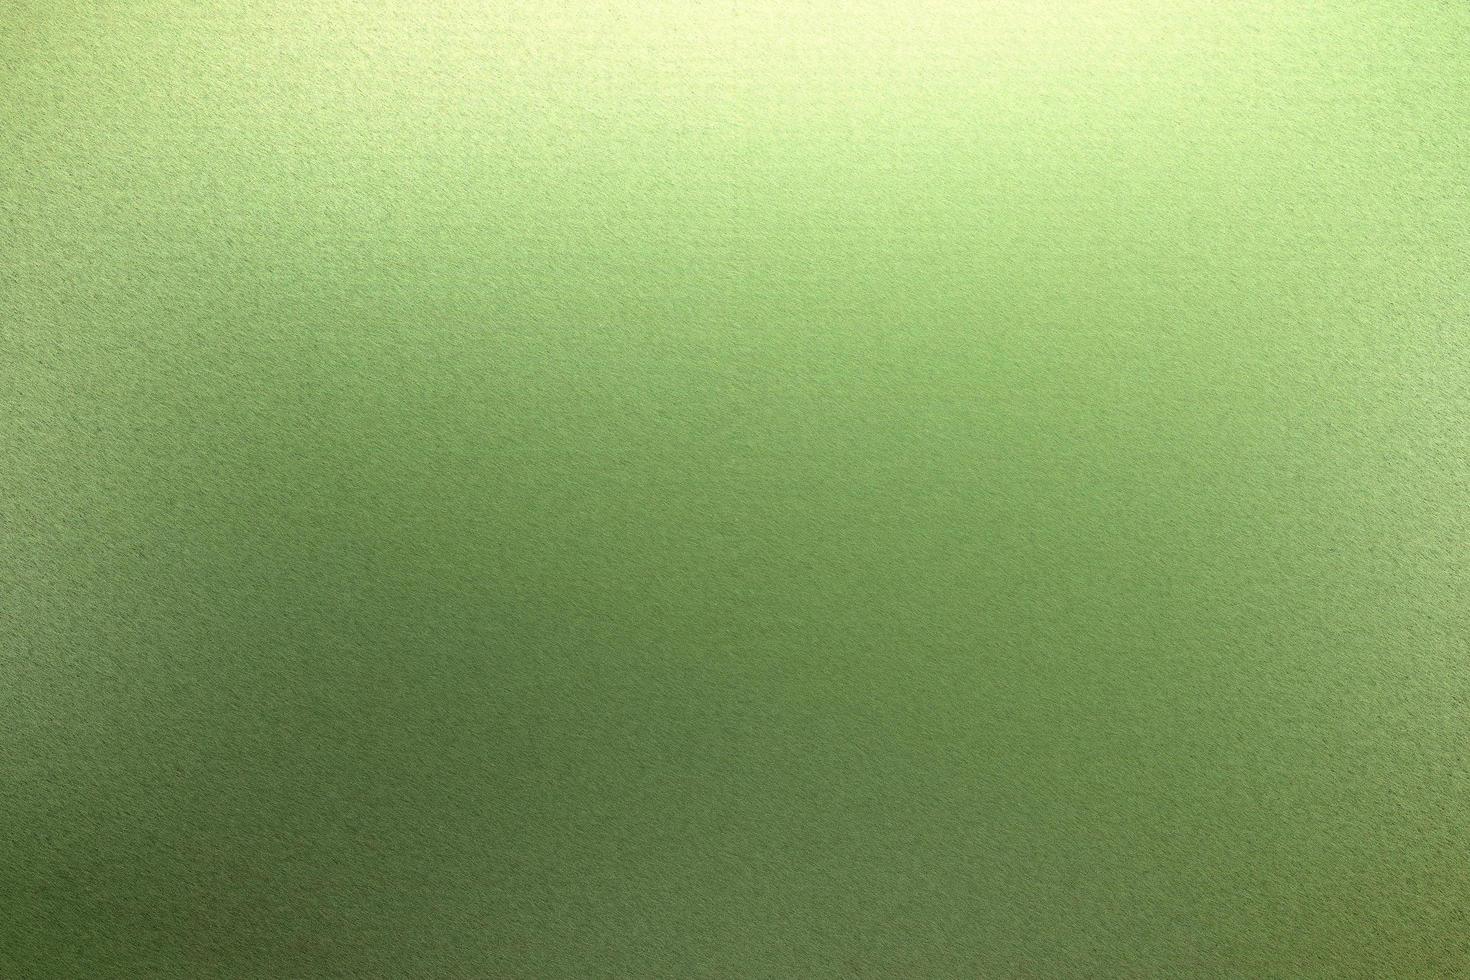 parete metallica verde spazzolata con superficie graffiata, sfondo a trama astratta foto